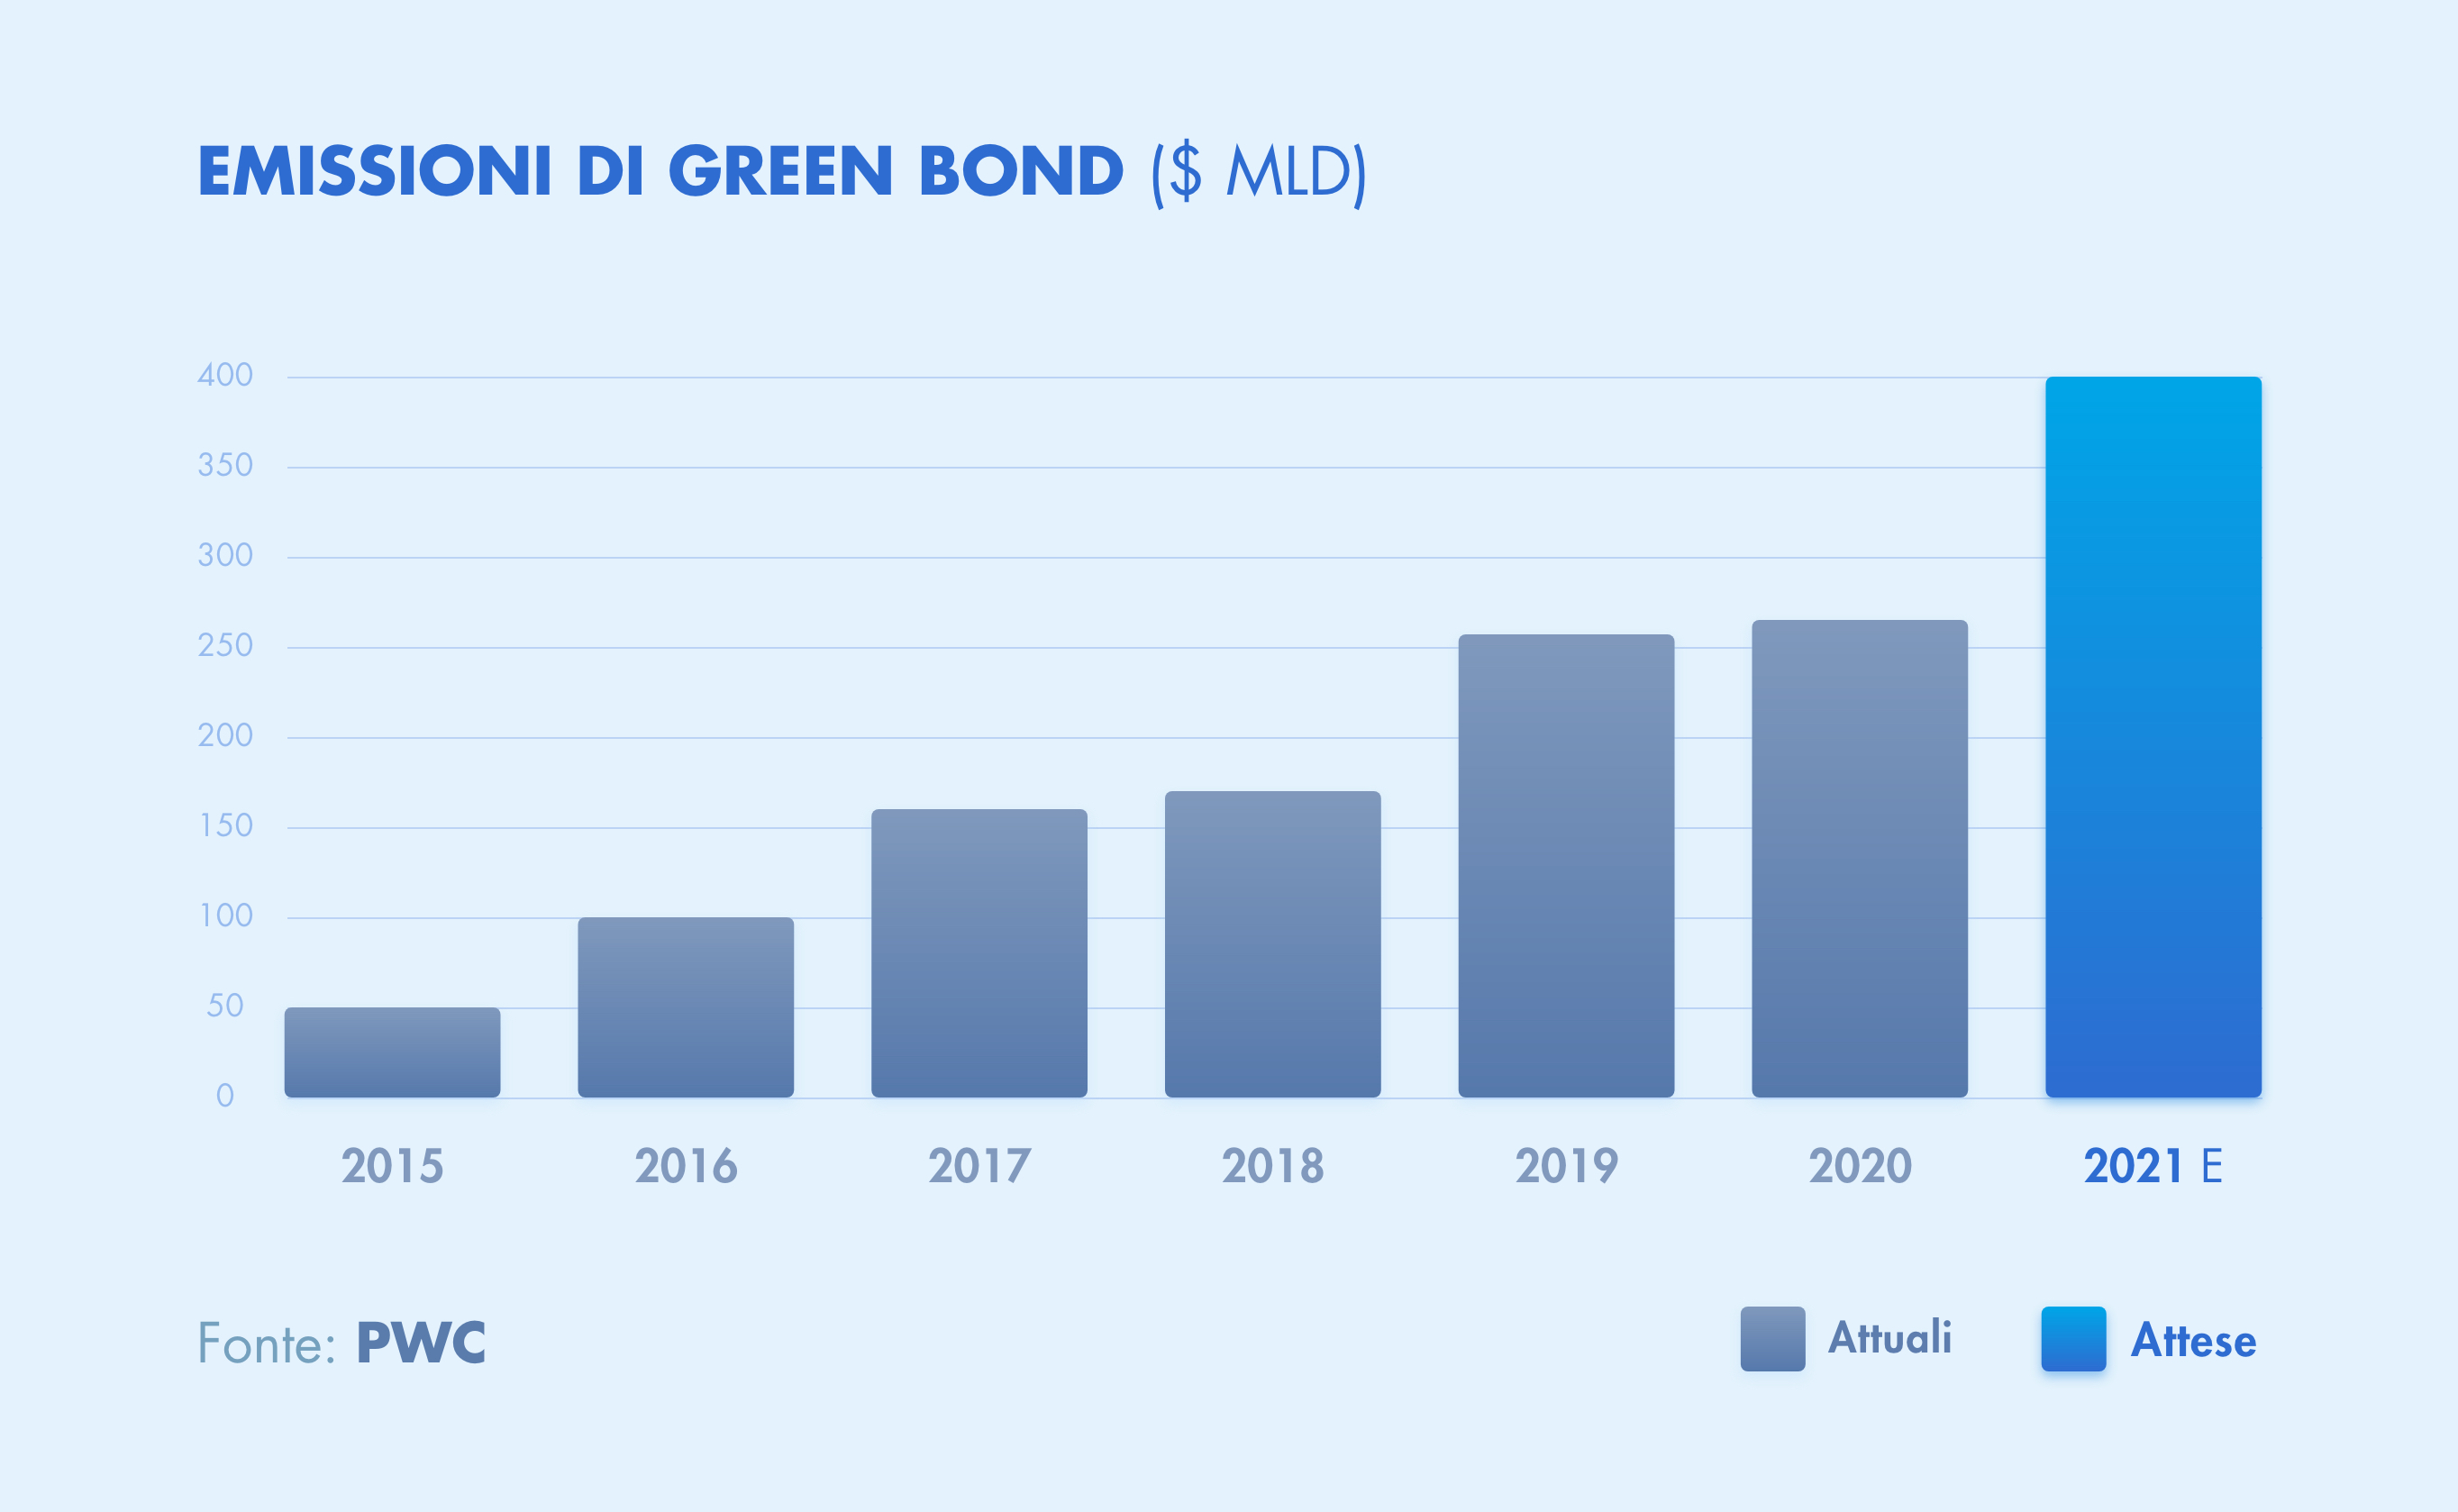 emissioni green bond 2020-2021